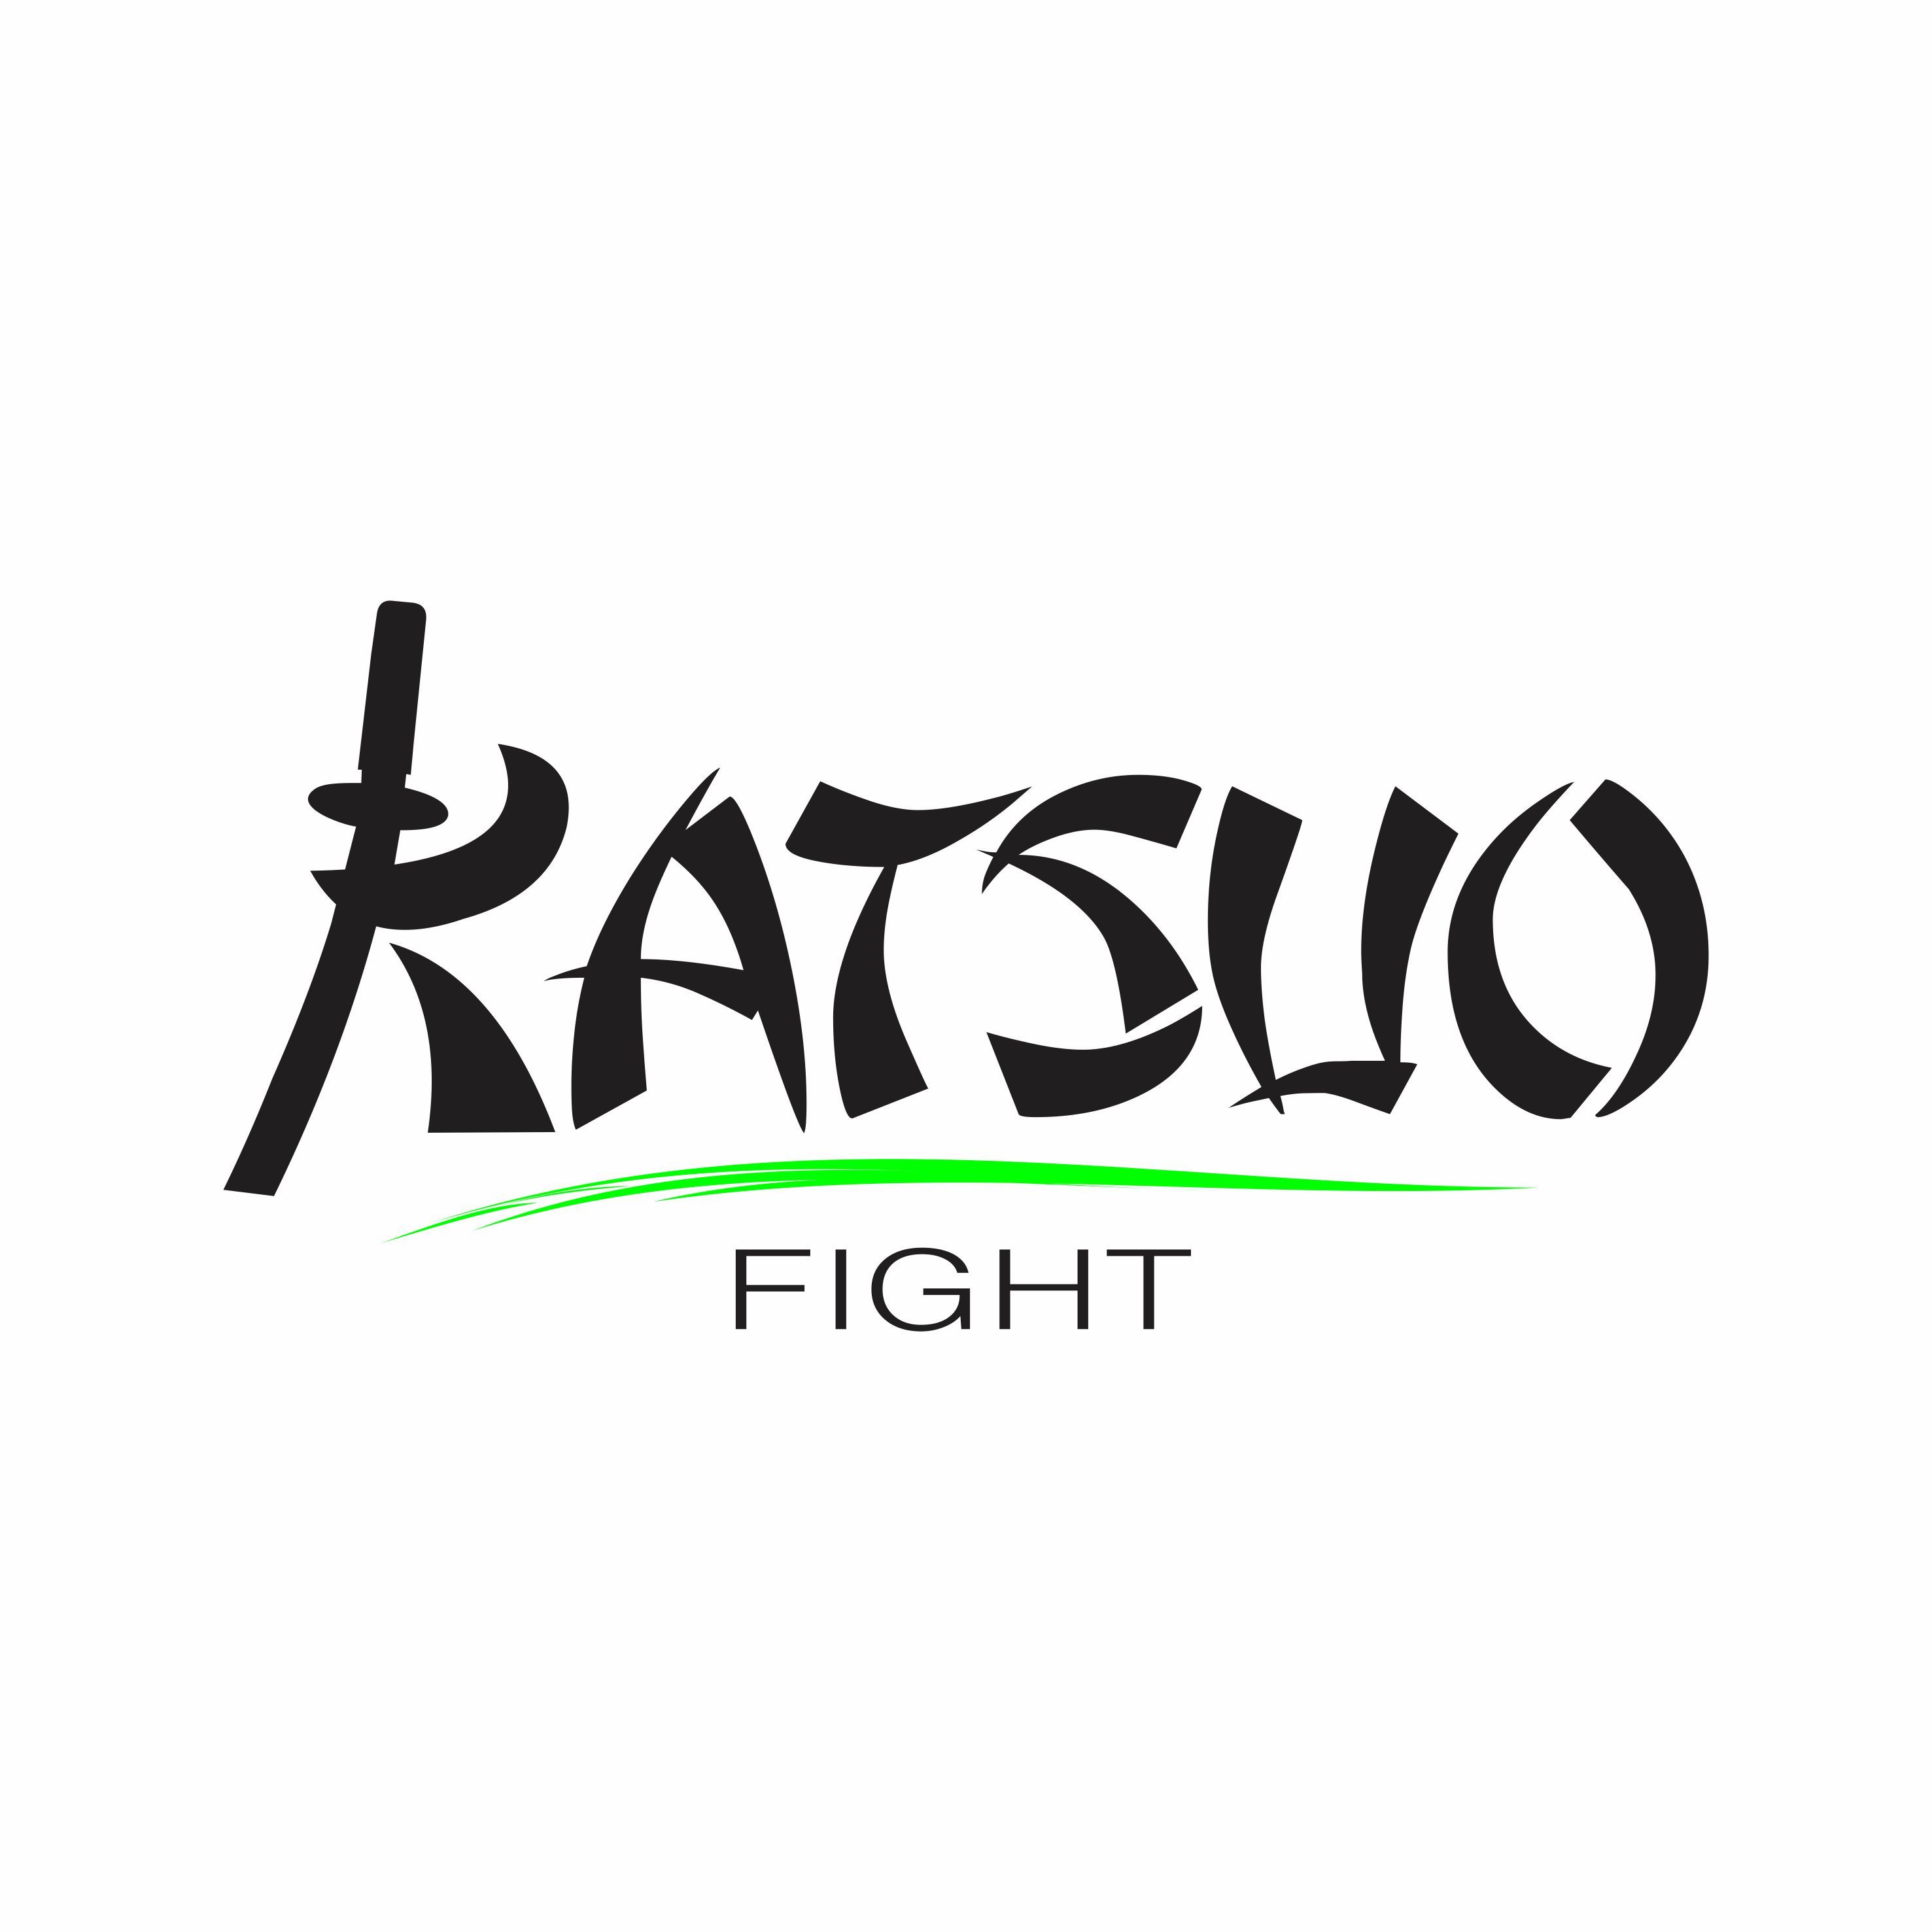 Katsuo FIGHT 